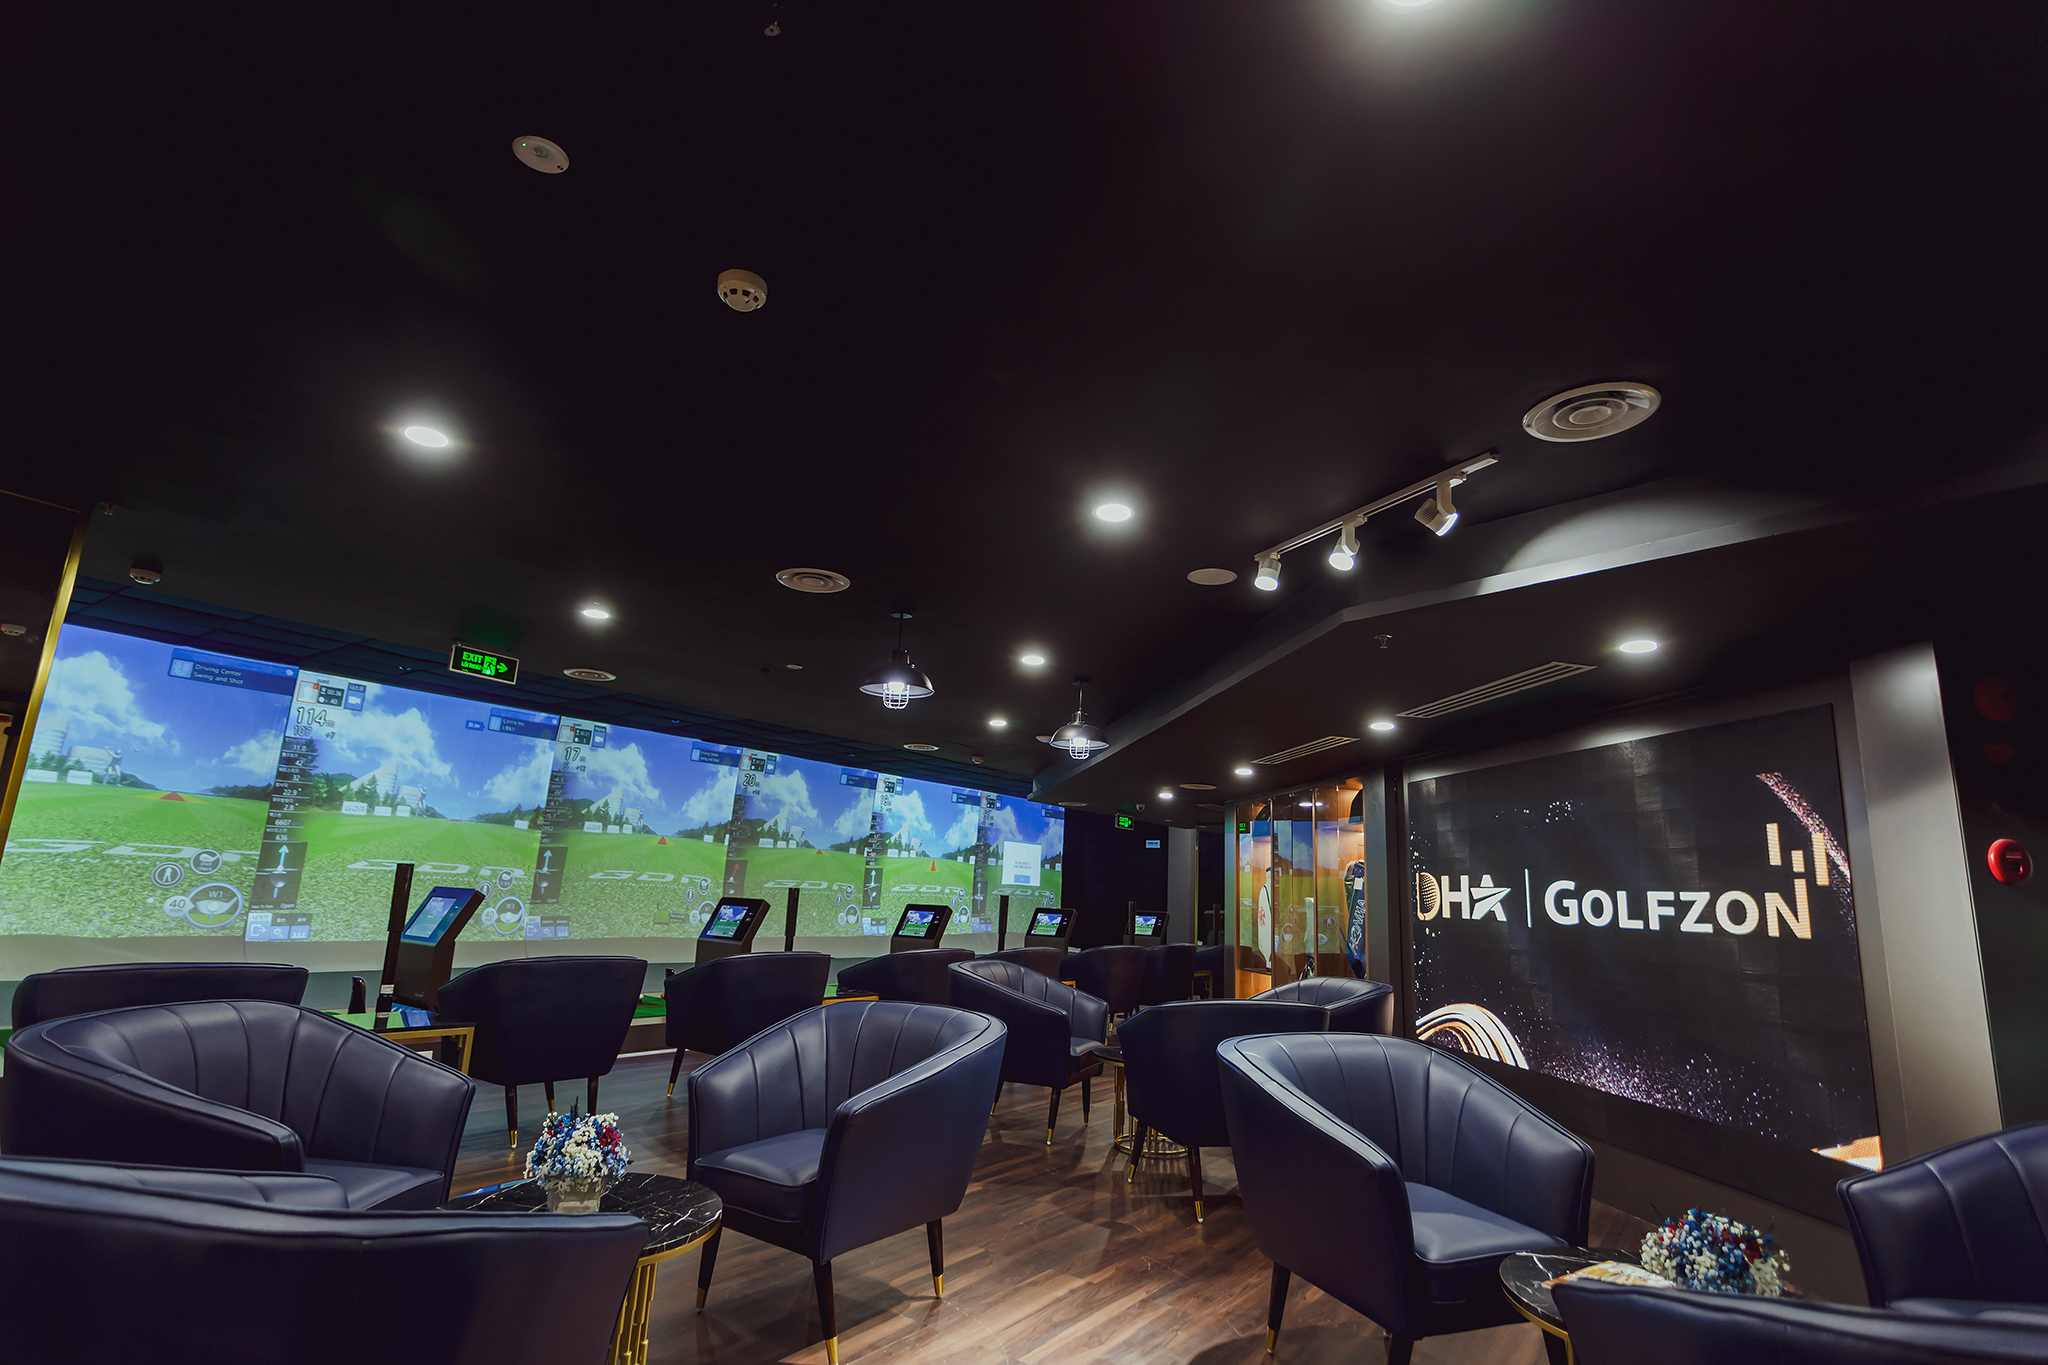 DHA Golfzon chính thức ra mắt cộng đồng golf Việt Nam